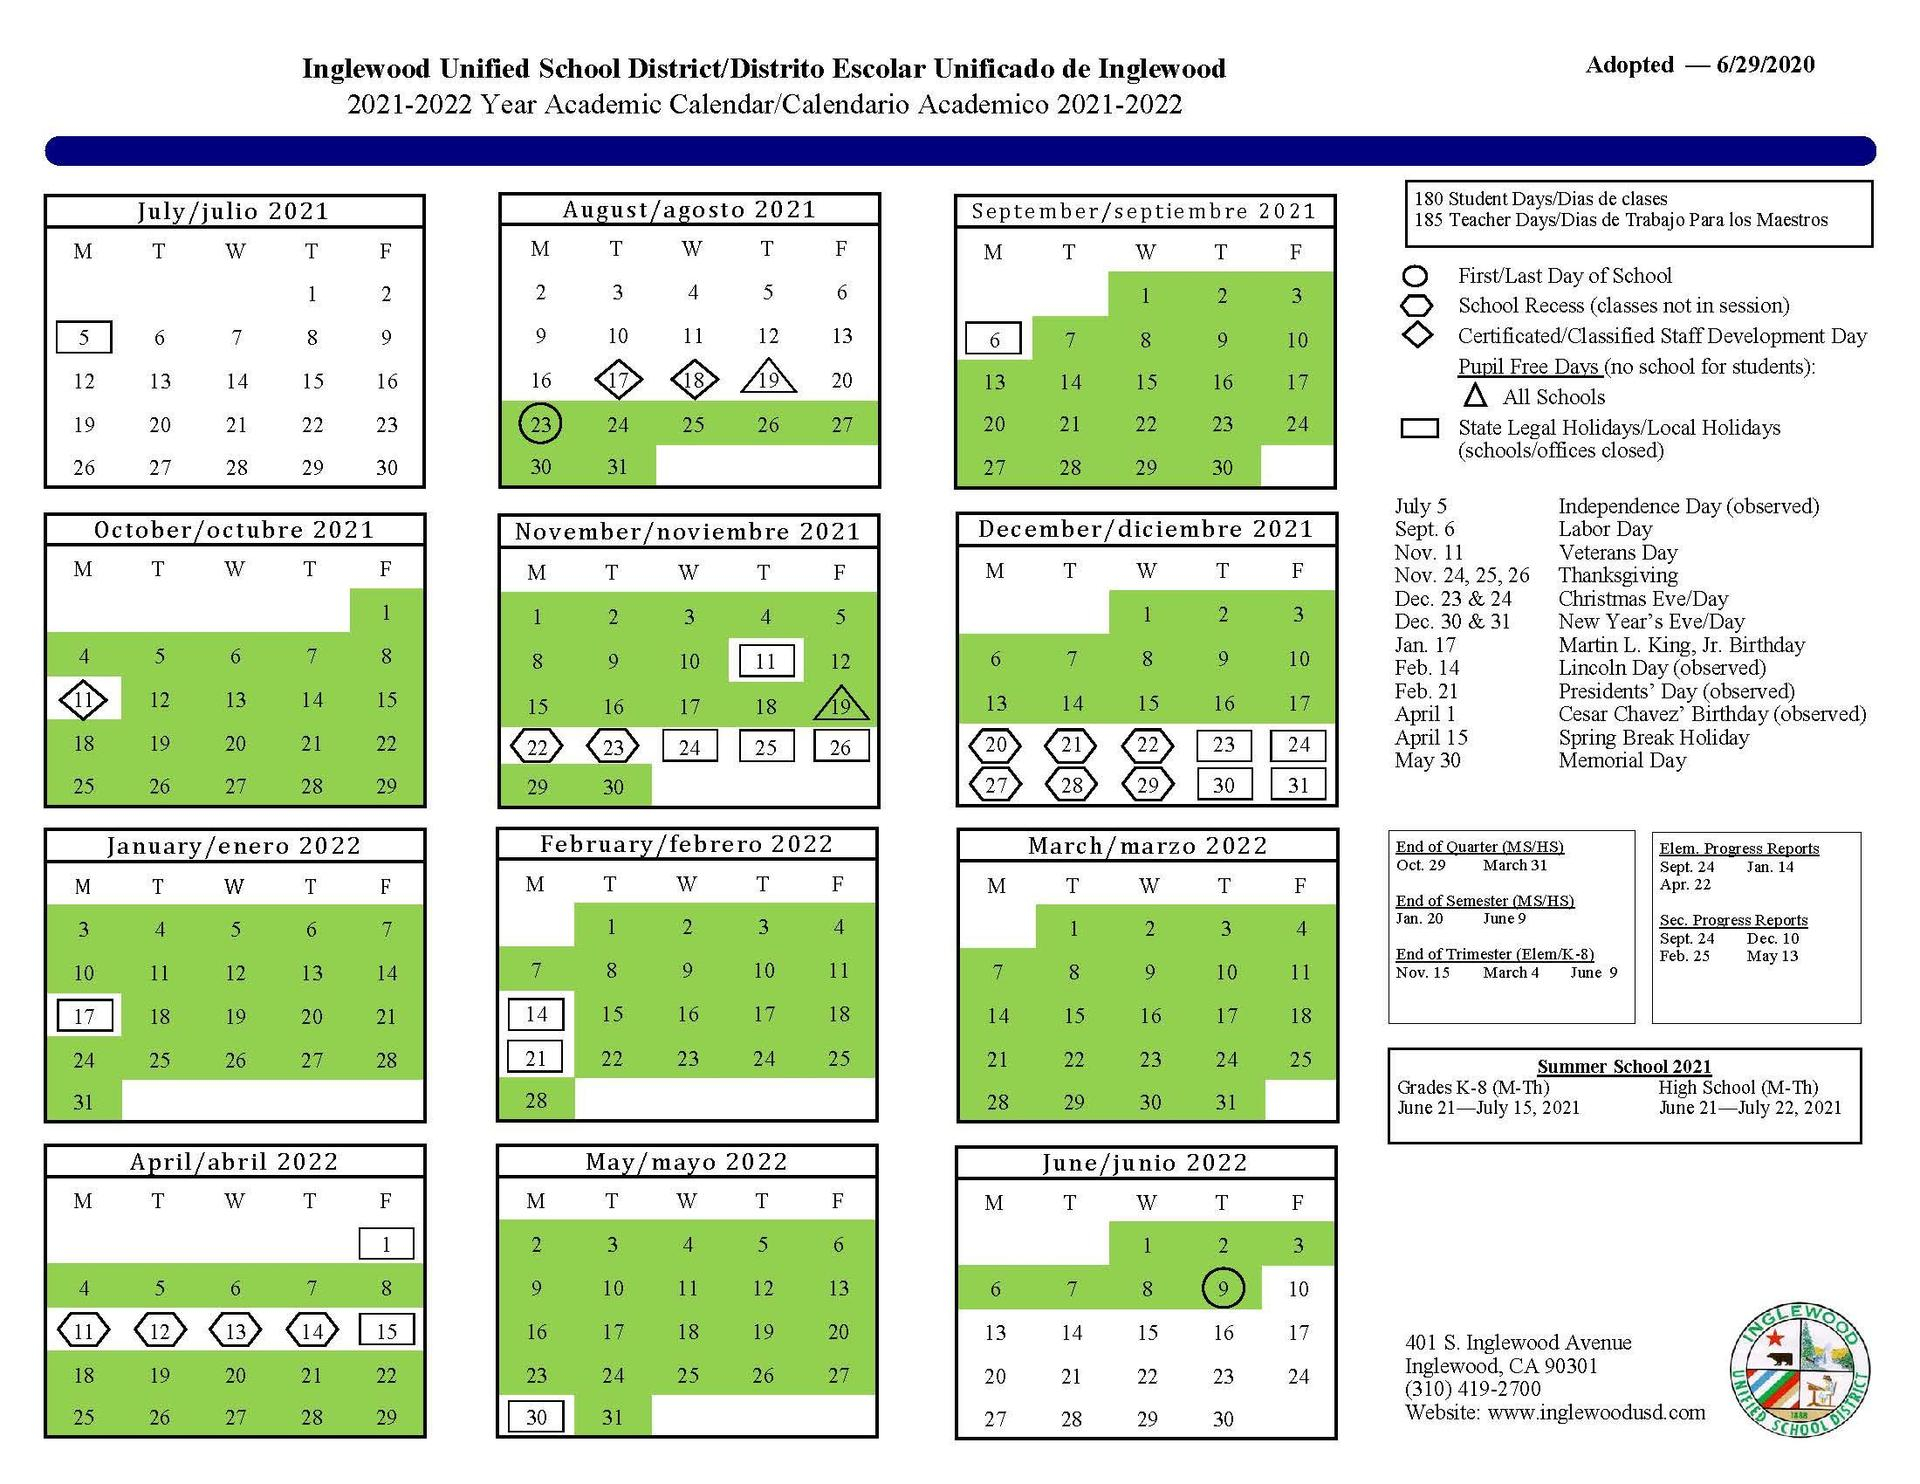 Asu Academic Calendar 2023 Spring